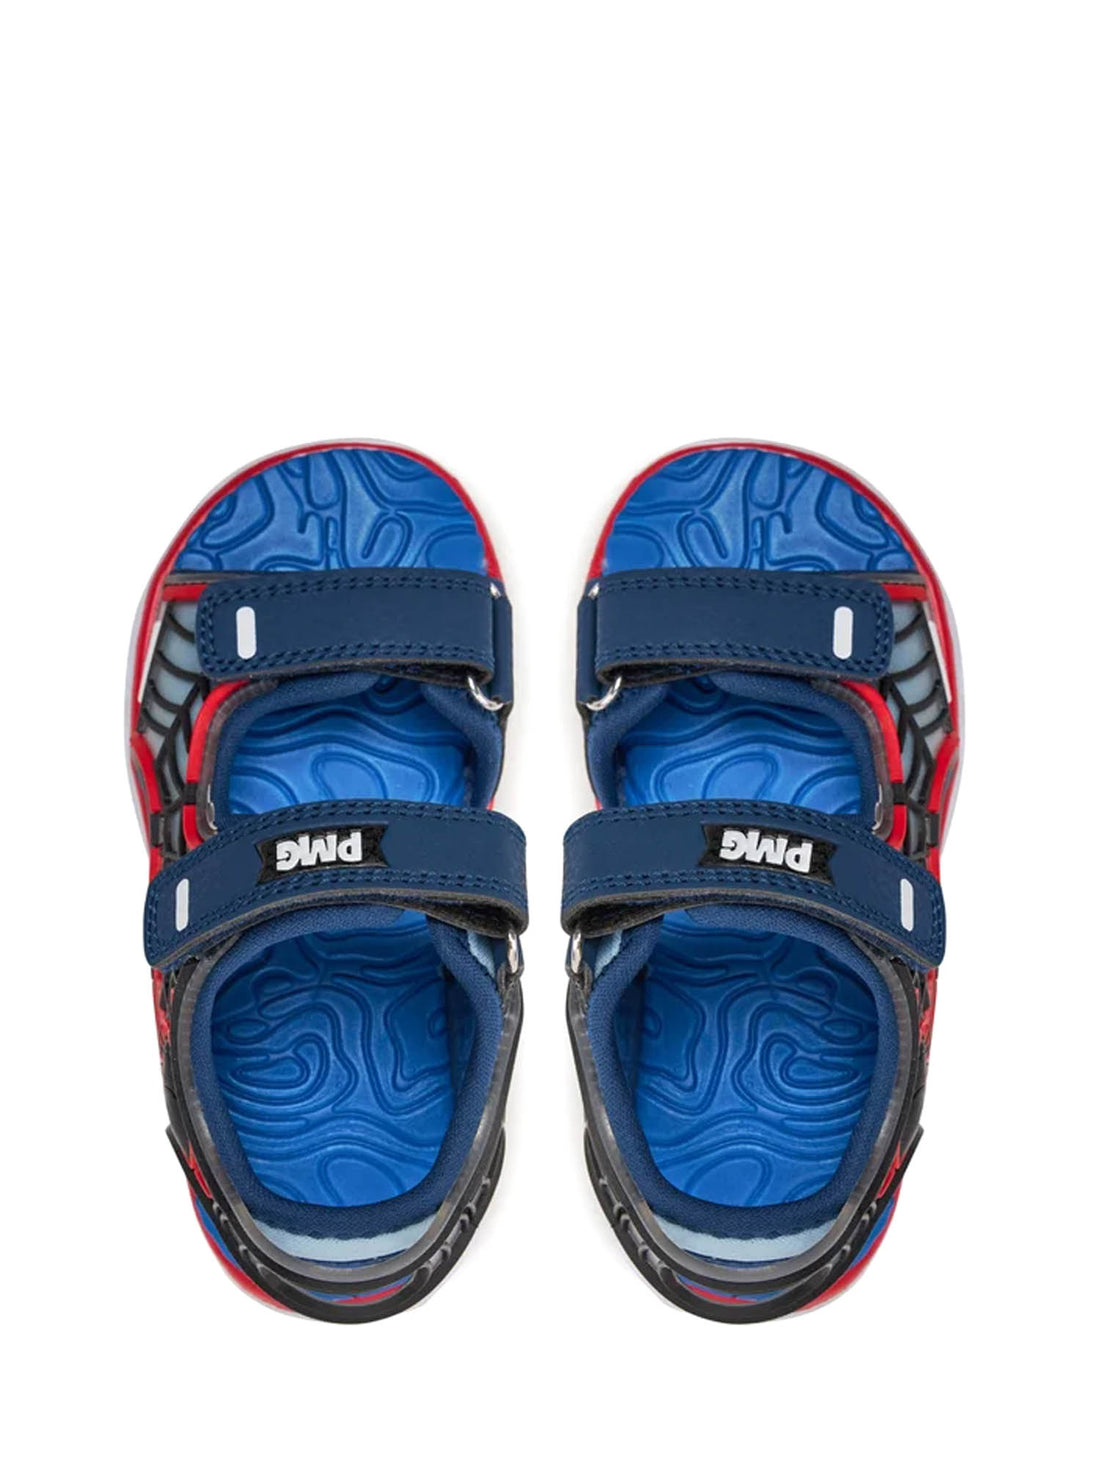 Sandali con strappi Blu Primigi